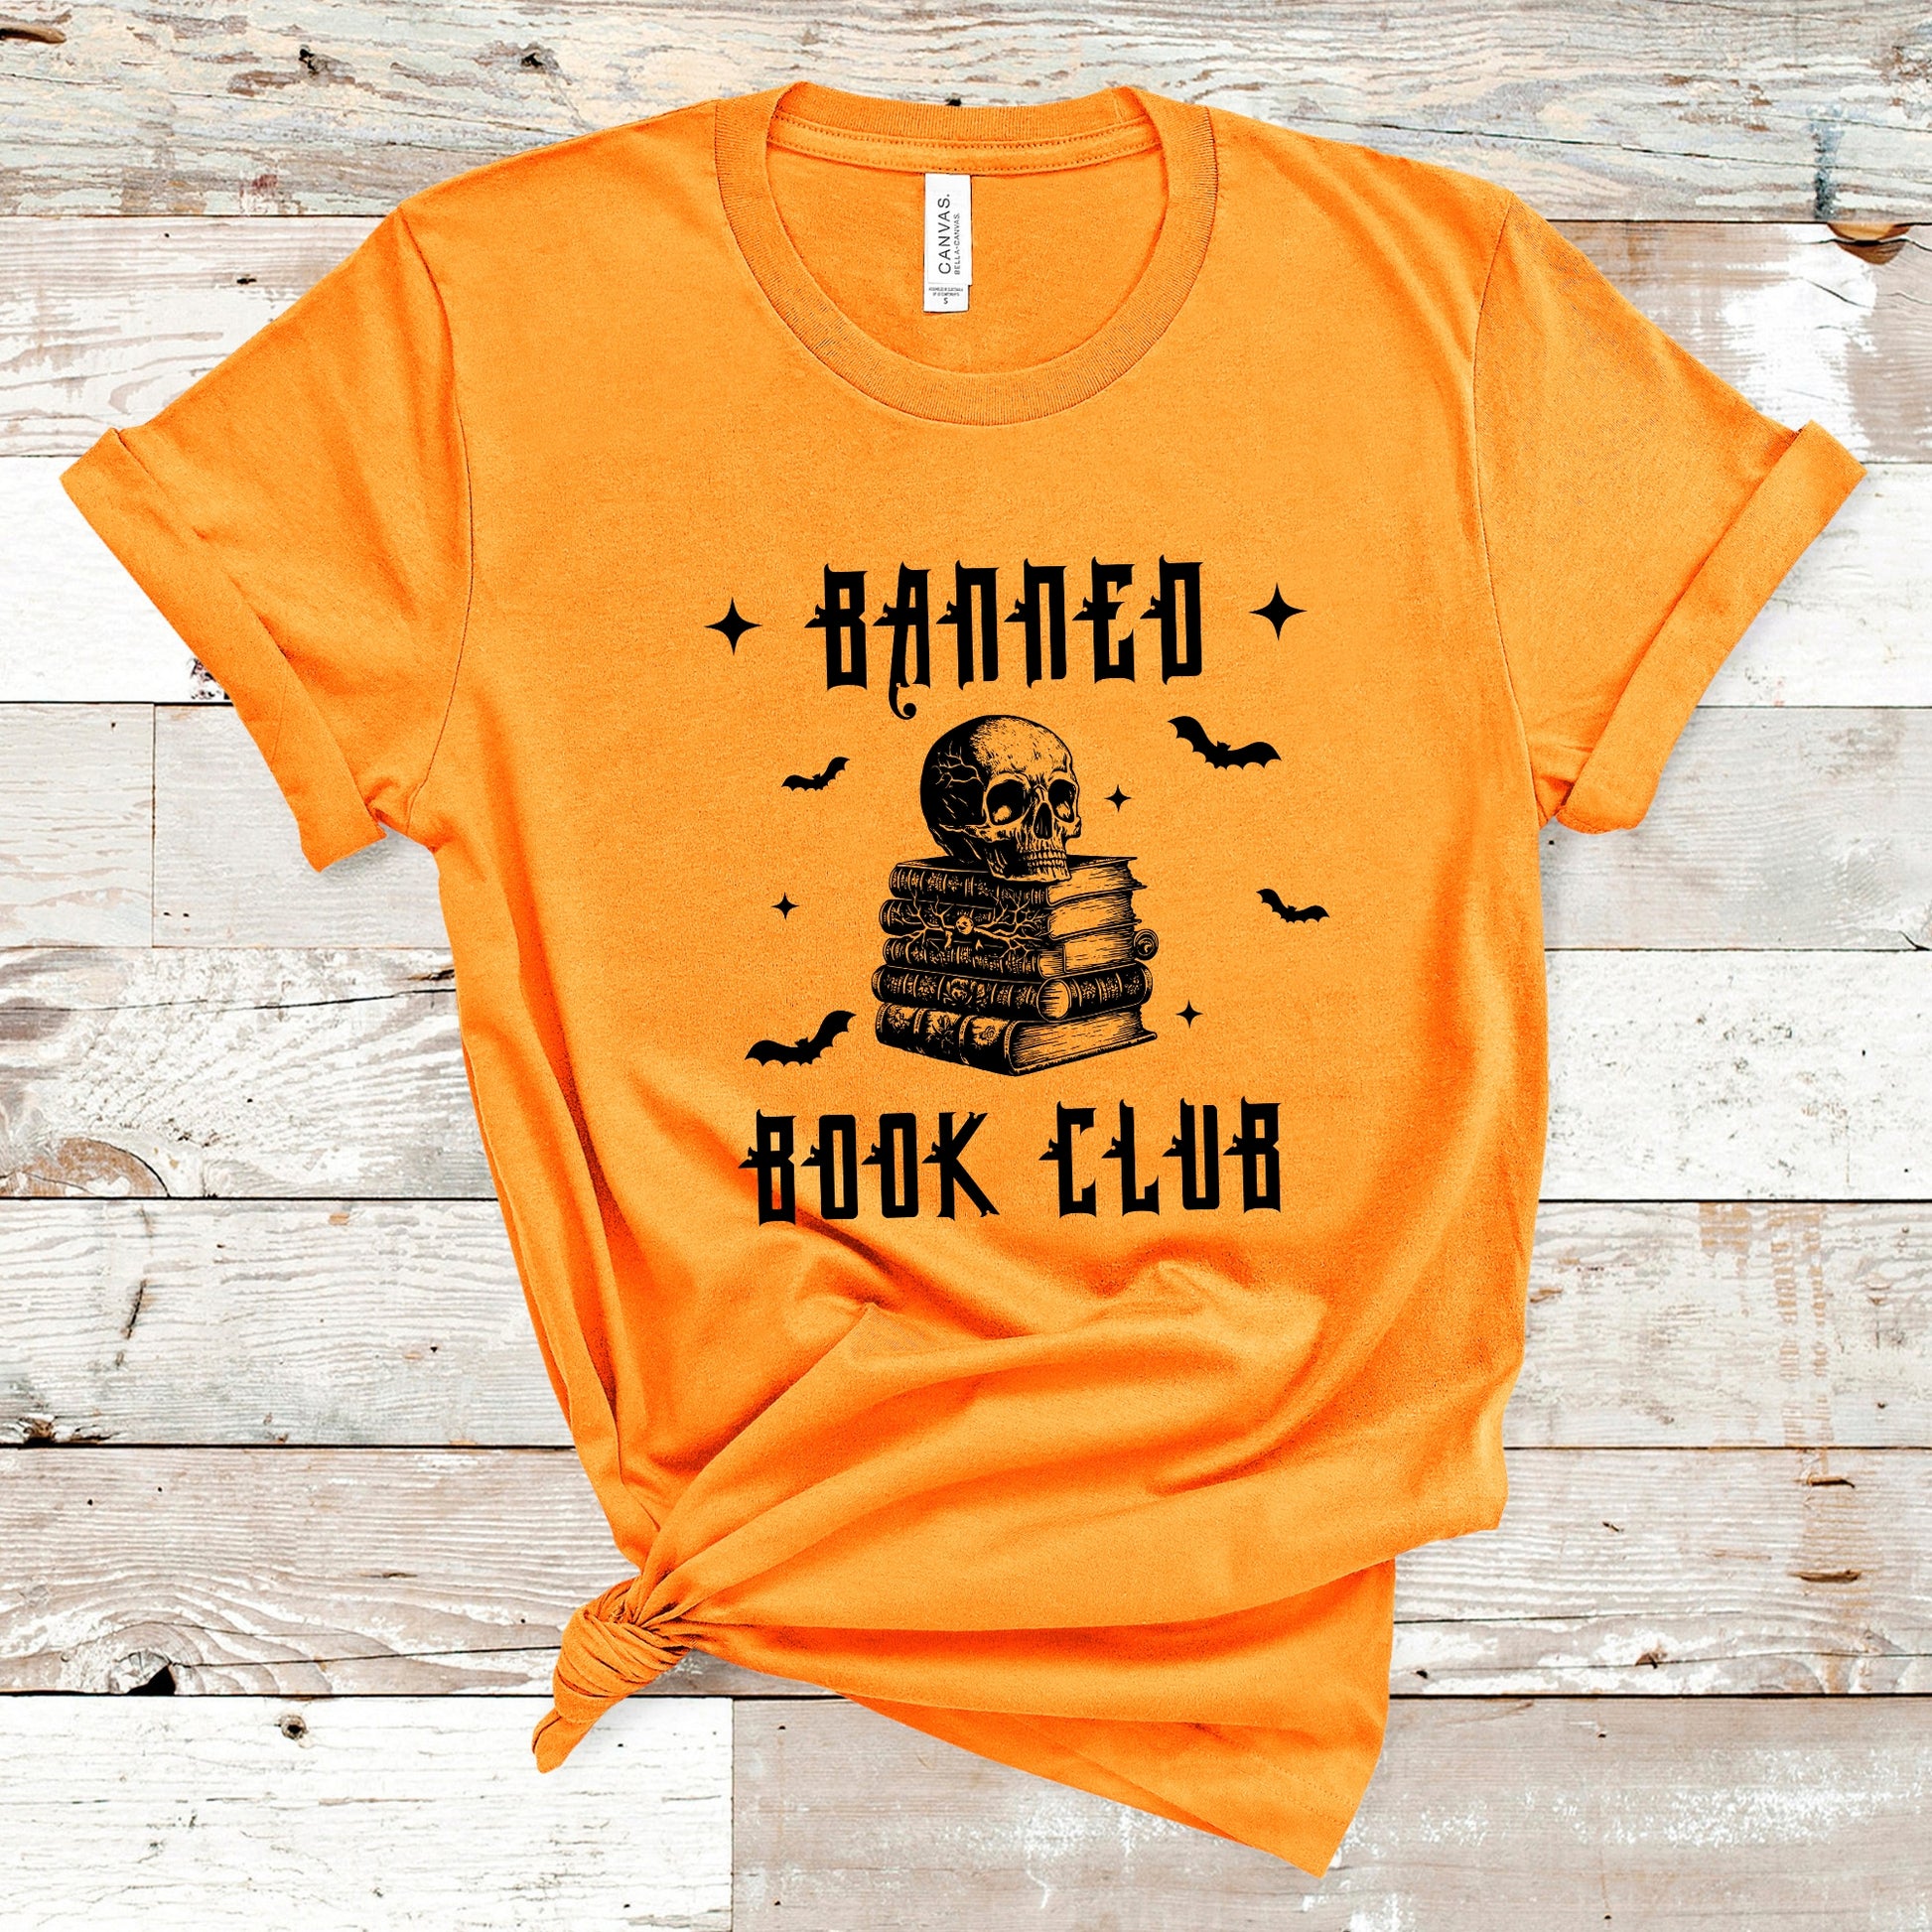 Banned Book Club White T-ShirtBanned Book Club White T-ShirtBanned Book Club Orange T-Shirt